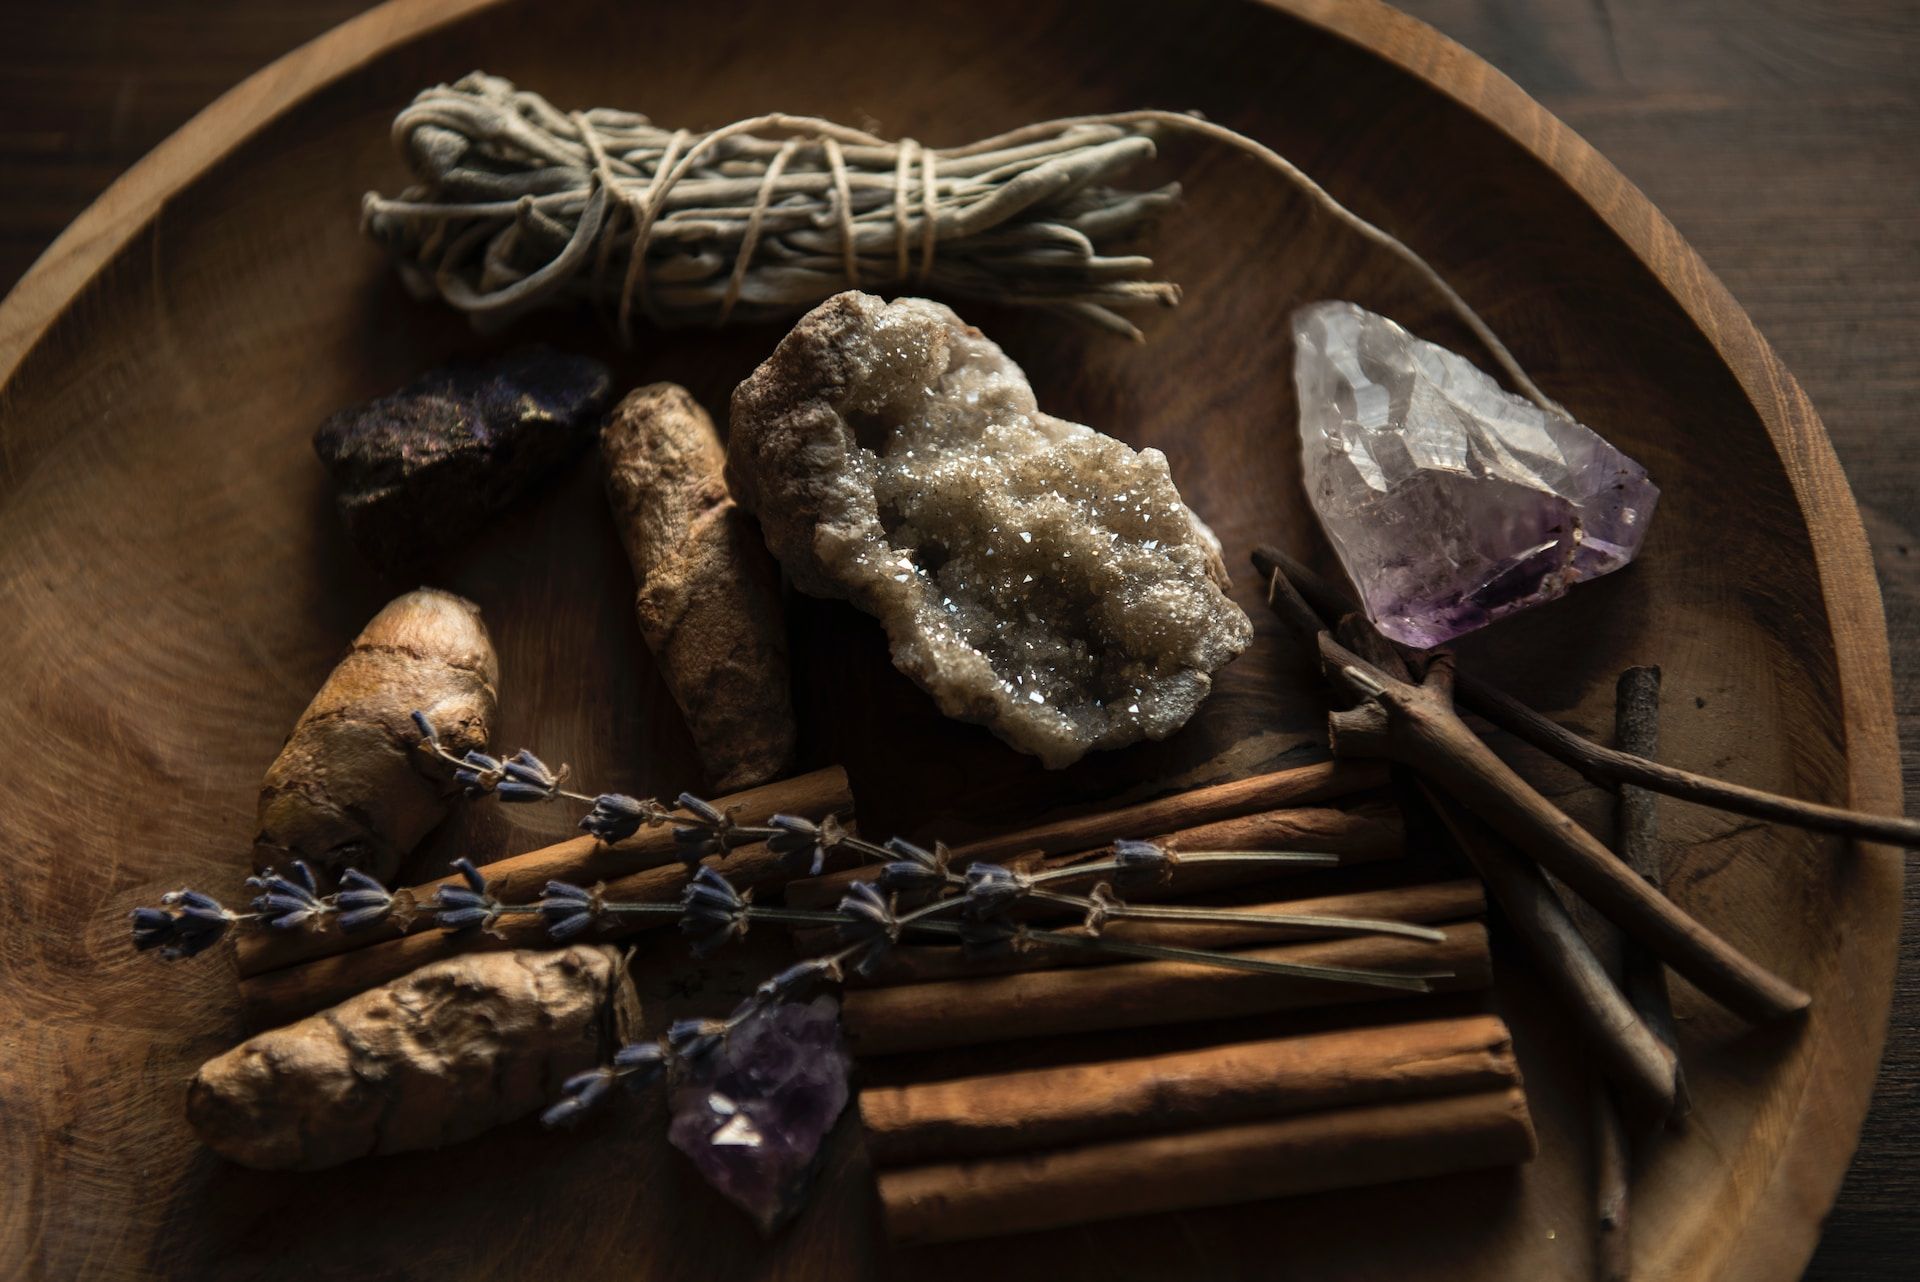 pierres, tarots et autres objets pour la magie ? - Photo de Joanna Kosinska sur https://unsplash.com/fr/photos/MnKWt1W1GDg